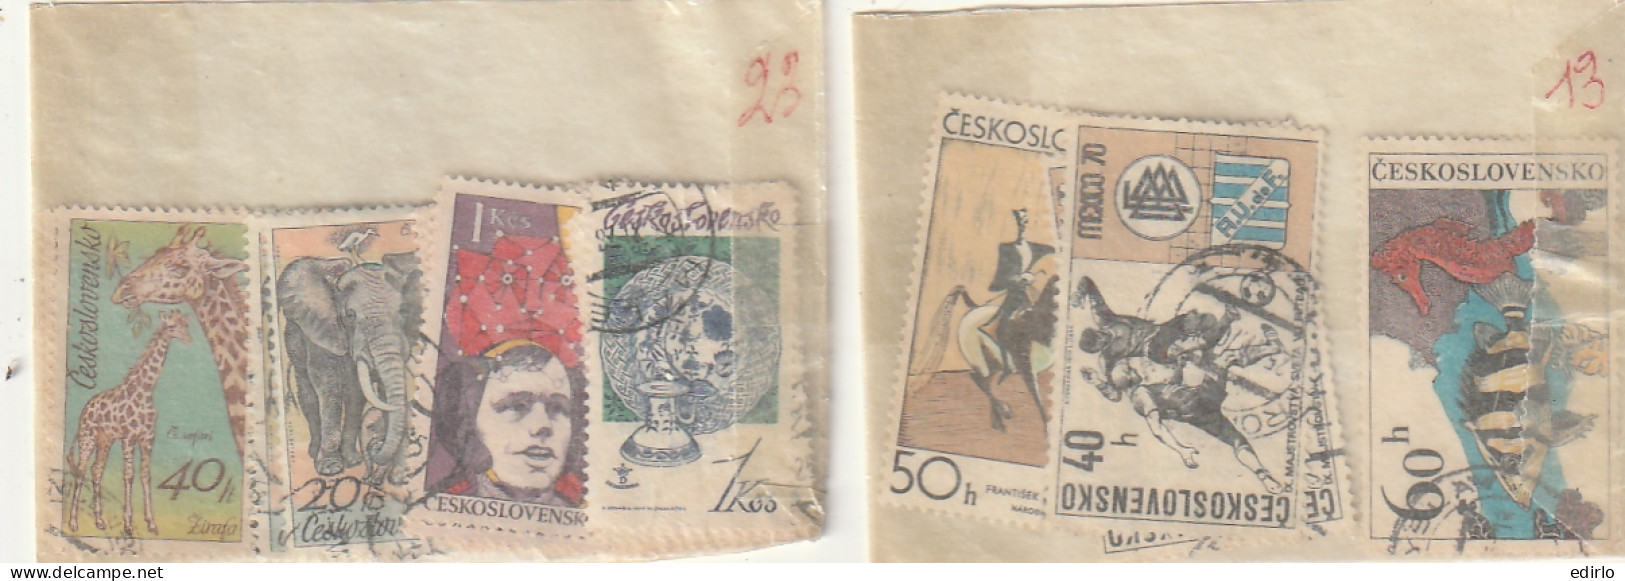 ///   TCHEKOSLOVAQUIE ///  COLLECTION EN POCHETTES (timbres Superposés)  - Pas Trop Regardé Pour Pas De Regrets - Collections, Lots & Séries